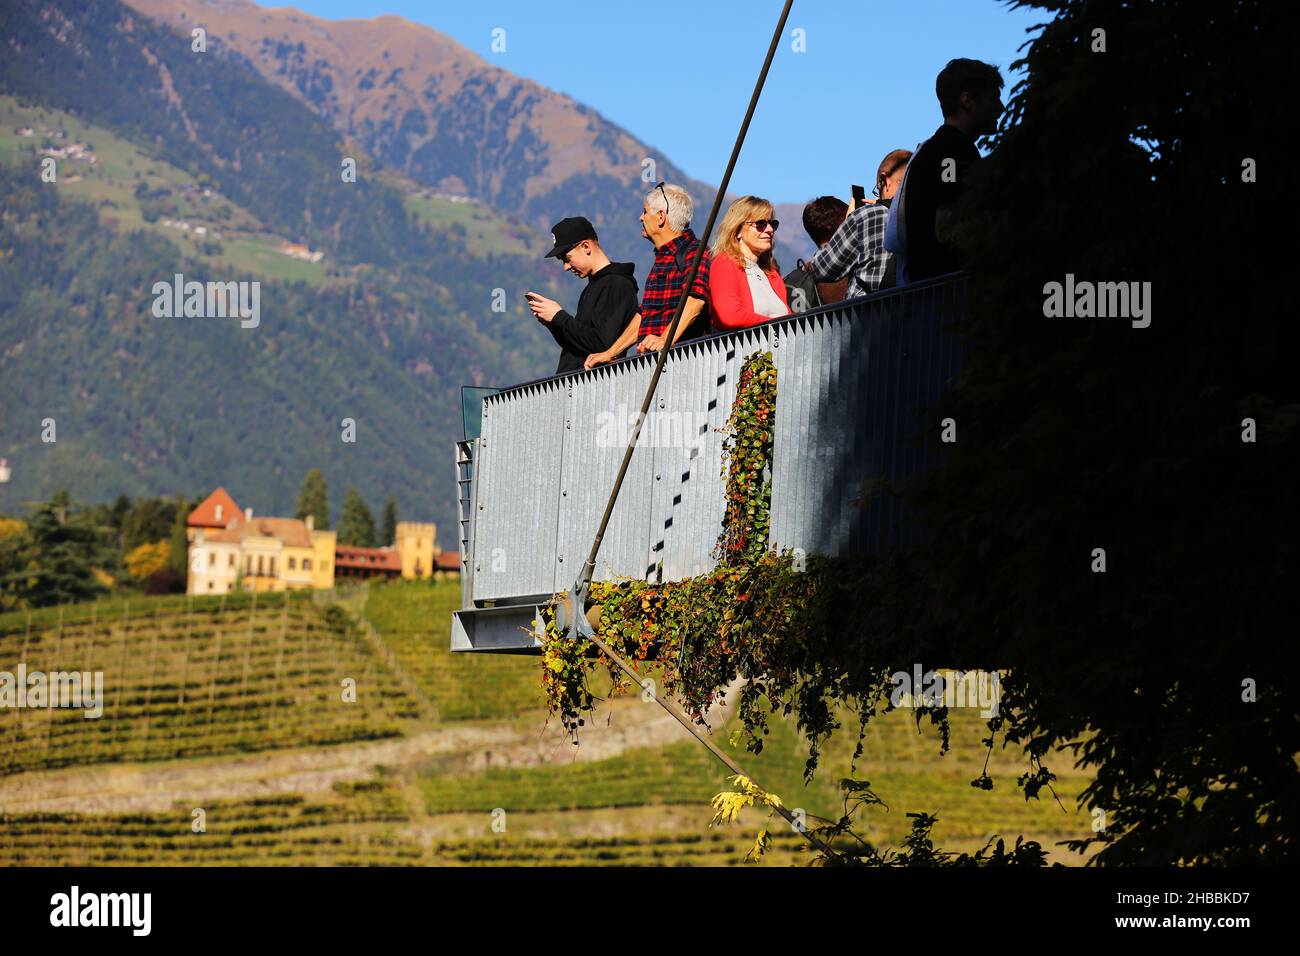 Meran, die Gärten von Schloss Trauttmansdorff eröffnen exotische Gartenlandschaft mit luftiger Aussichtsplattform Südtirol, Dolomitas, Italien Foto de stock